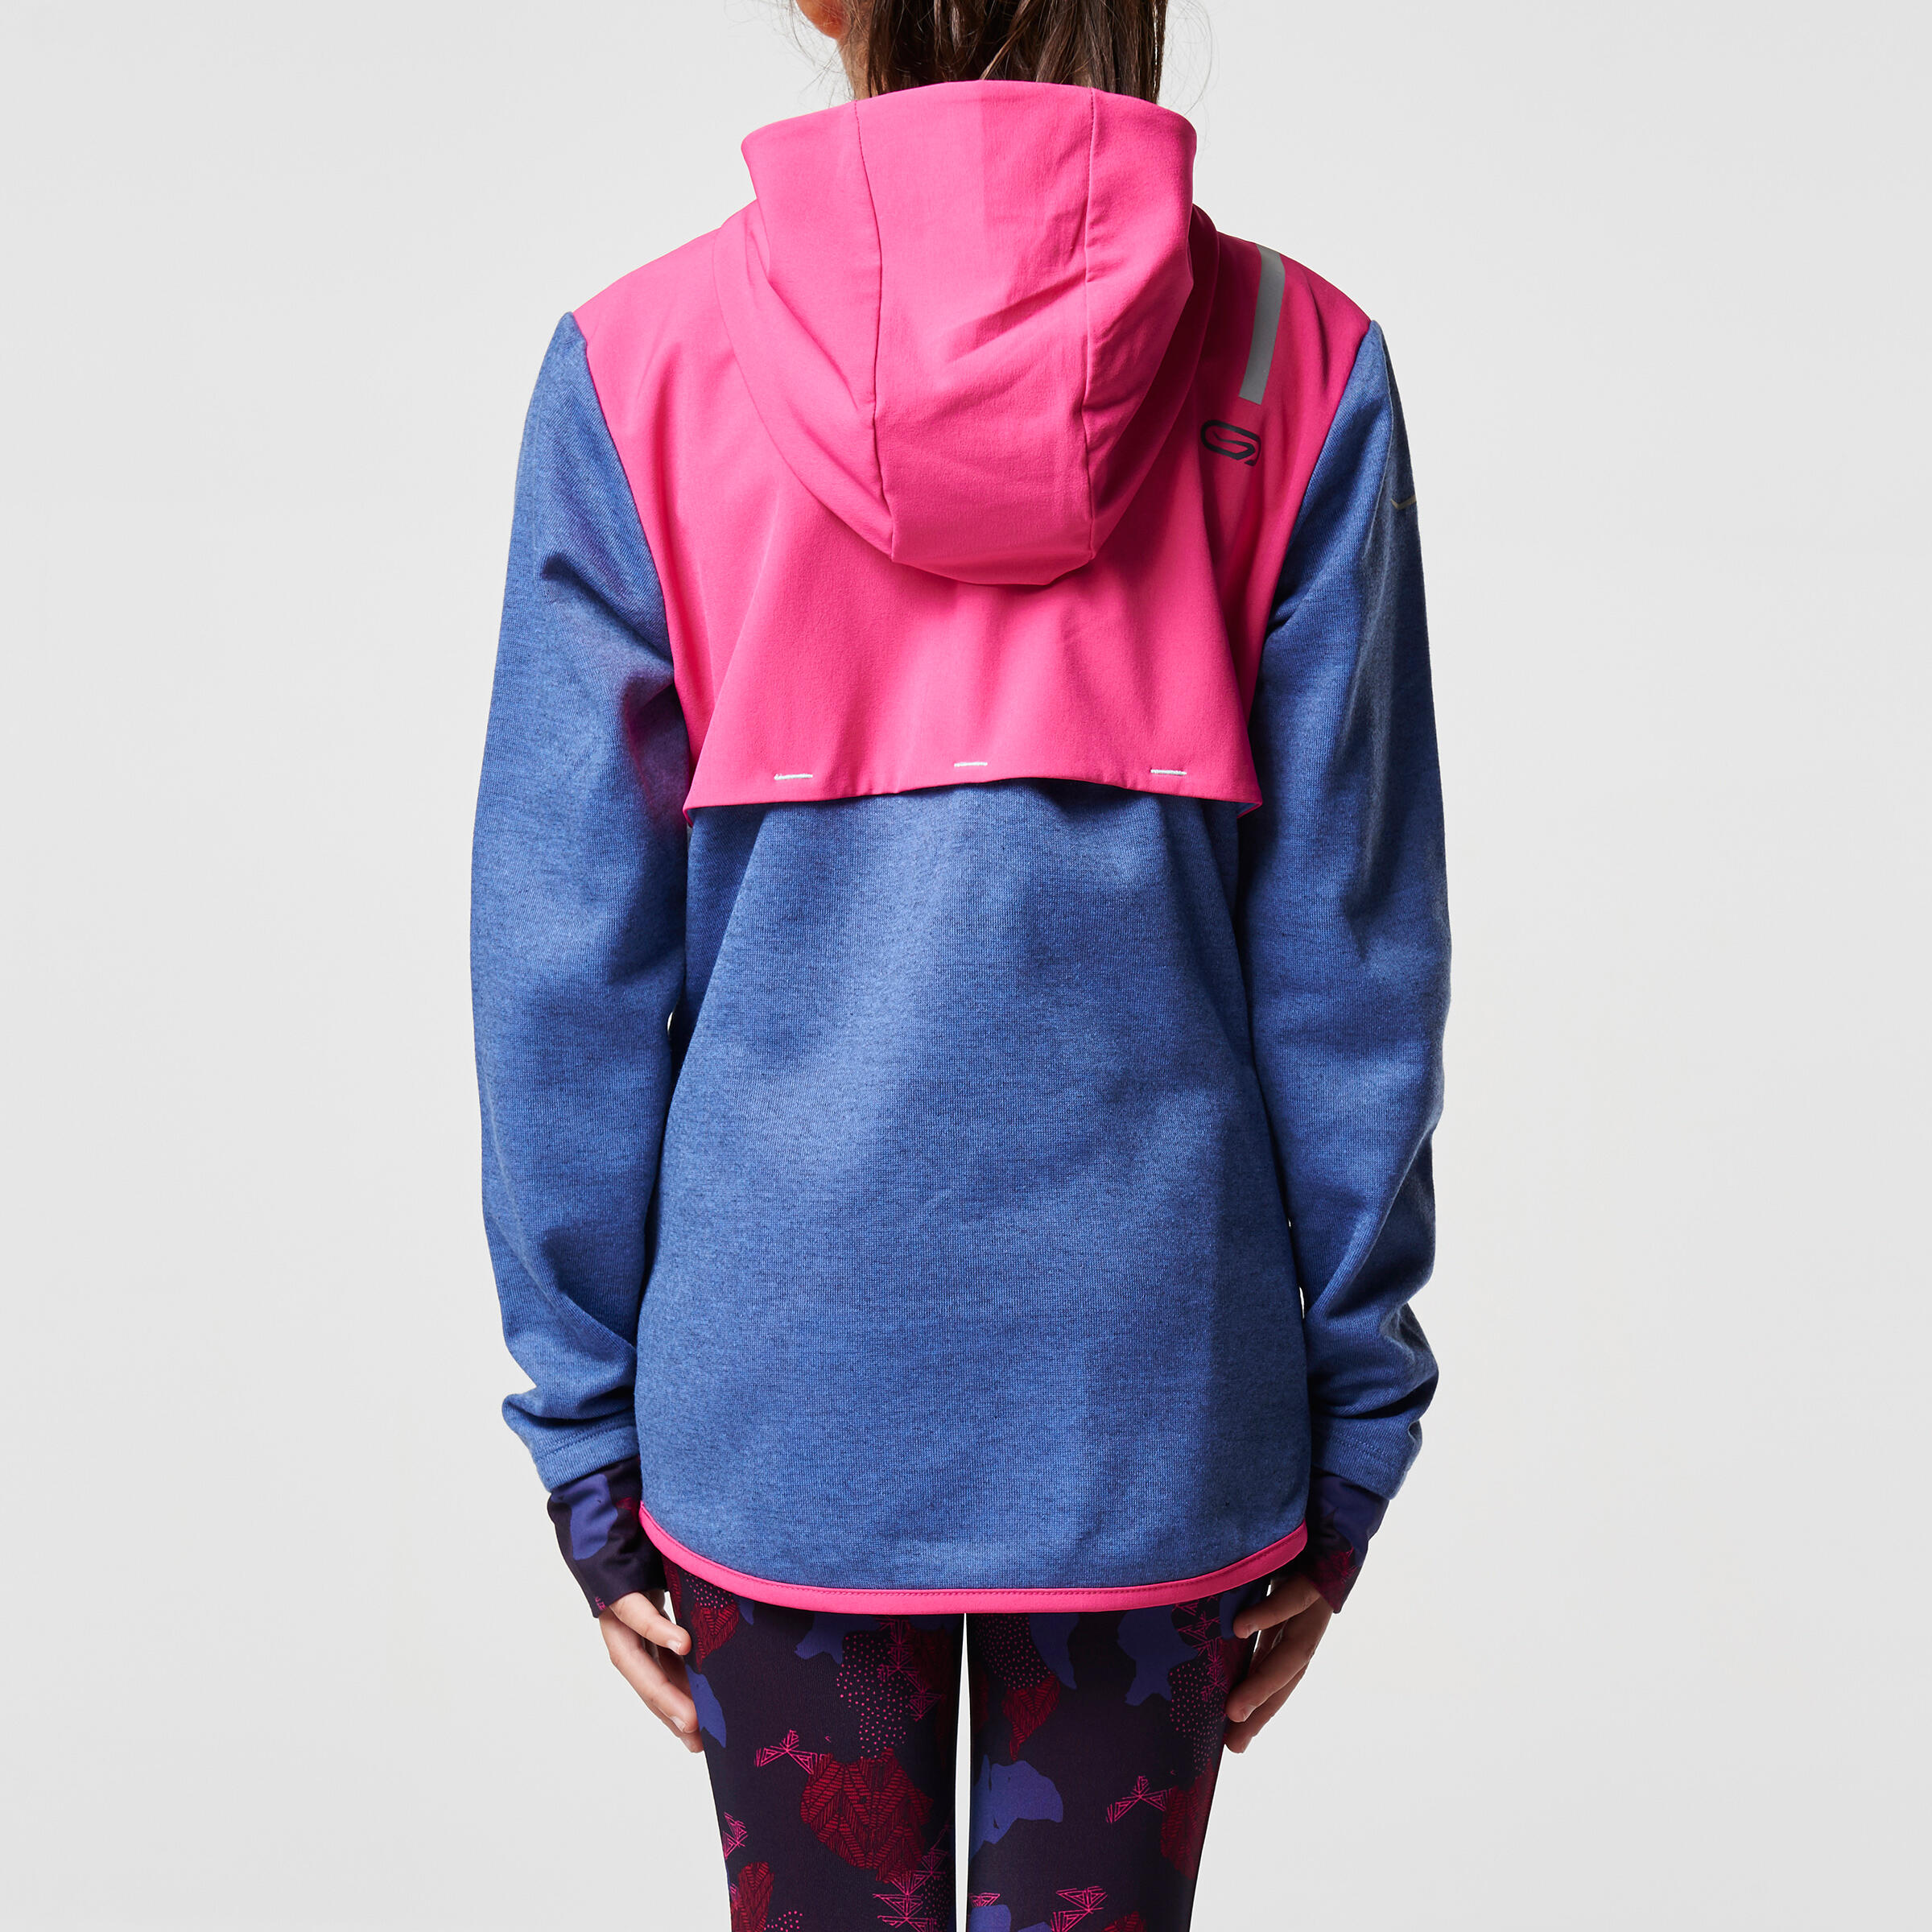 Elio Children's Running Hooded Jersey - Pink/Blue
 5/16